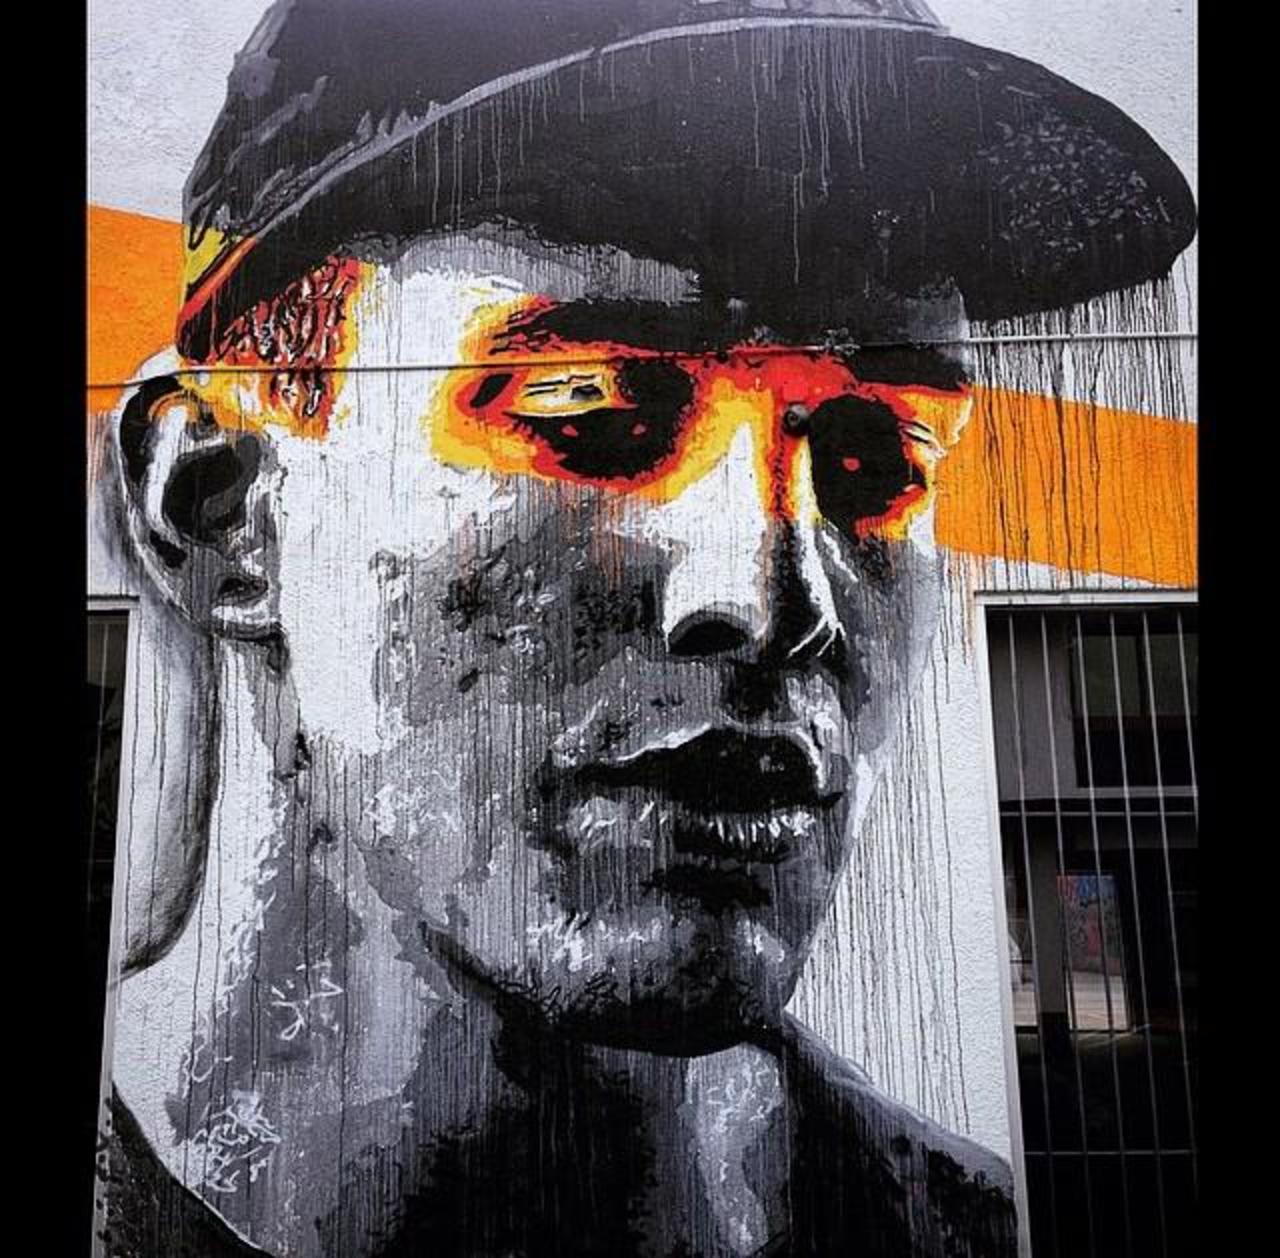 RT GoogleStreetArt "Artist Nils Westergard Street Art portrait in Miami 

#art #graffiti #mural #streetart http://t.co/VSKTv17gVz"